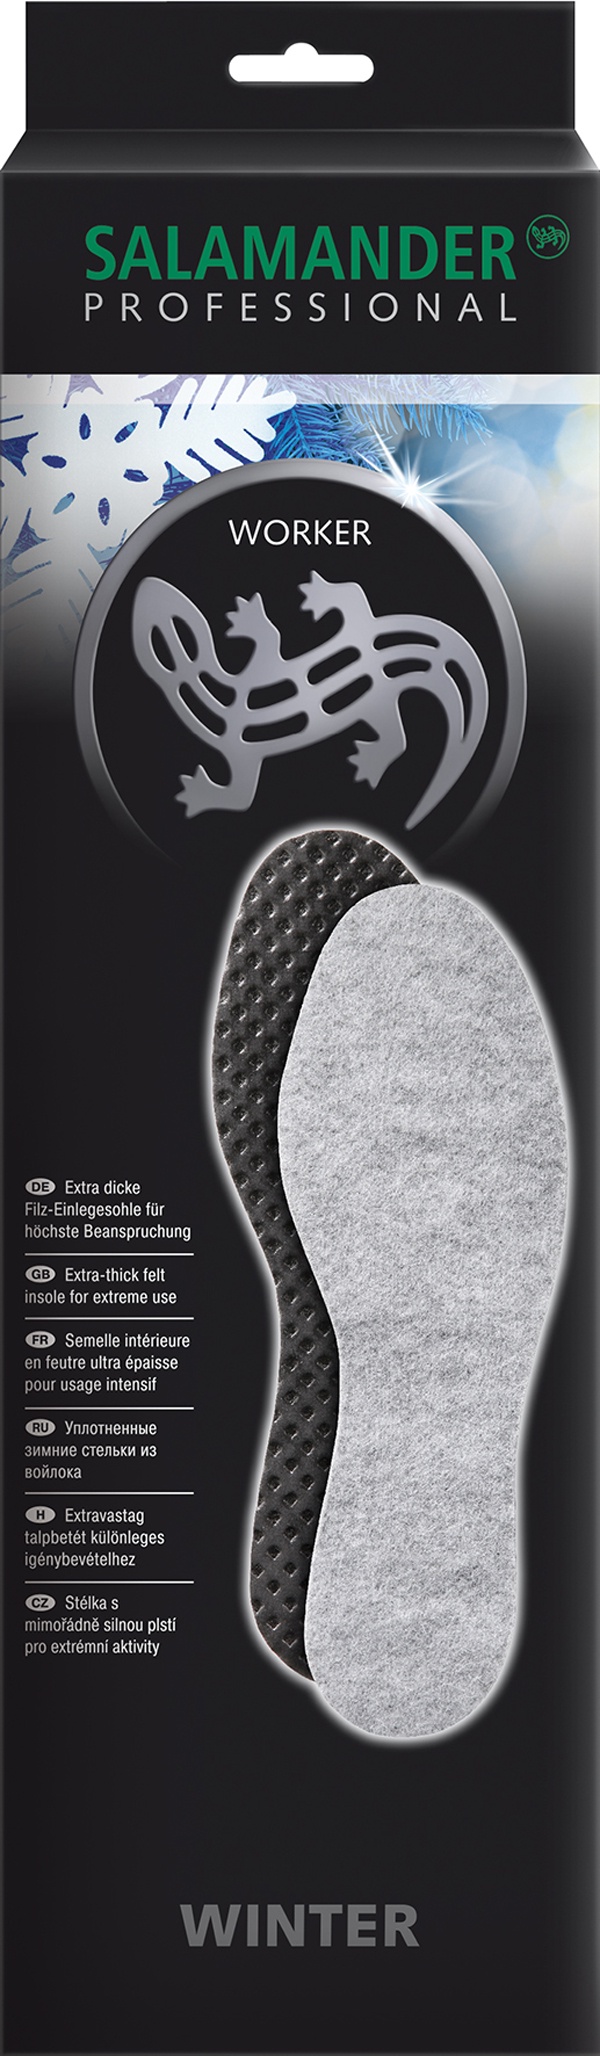 Стельки для обуви Salamander Защита и уход, 685654, светло-серый, серебристый